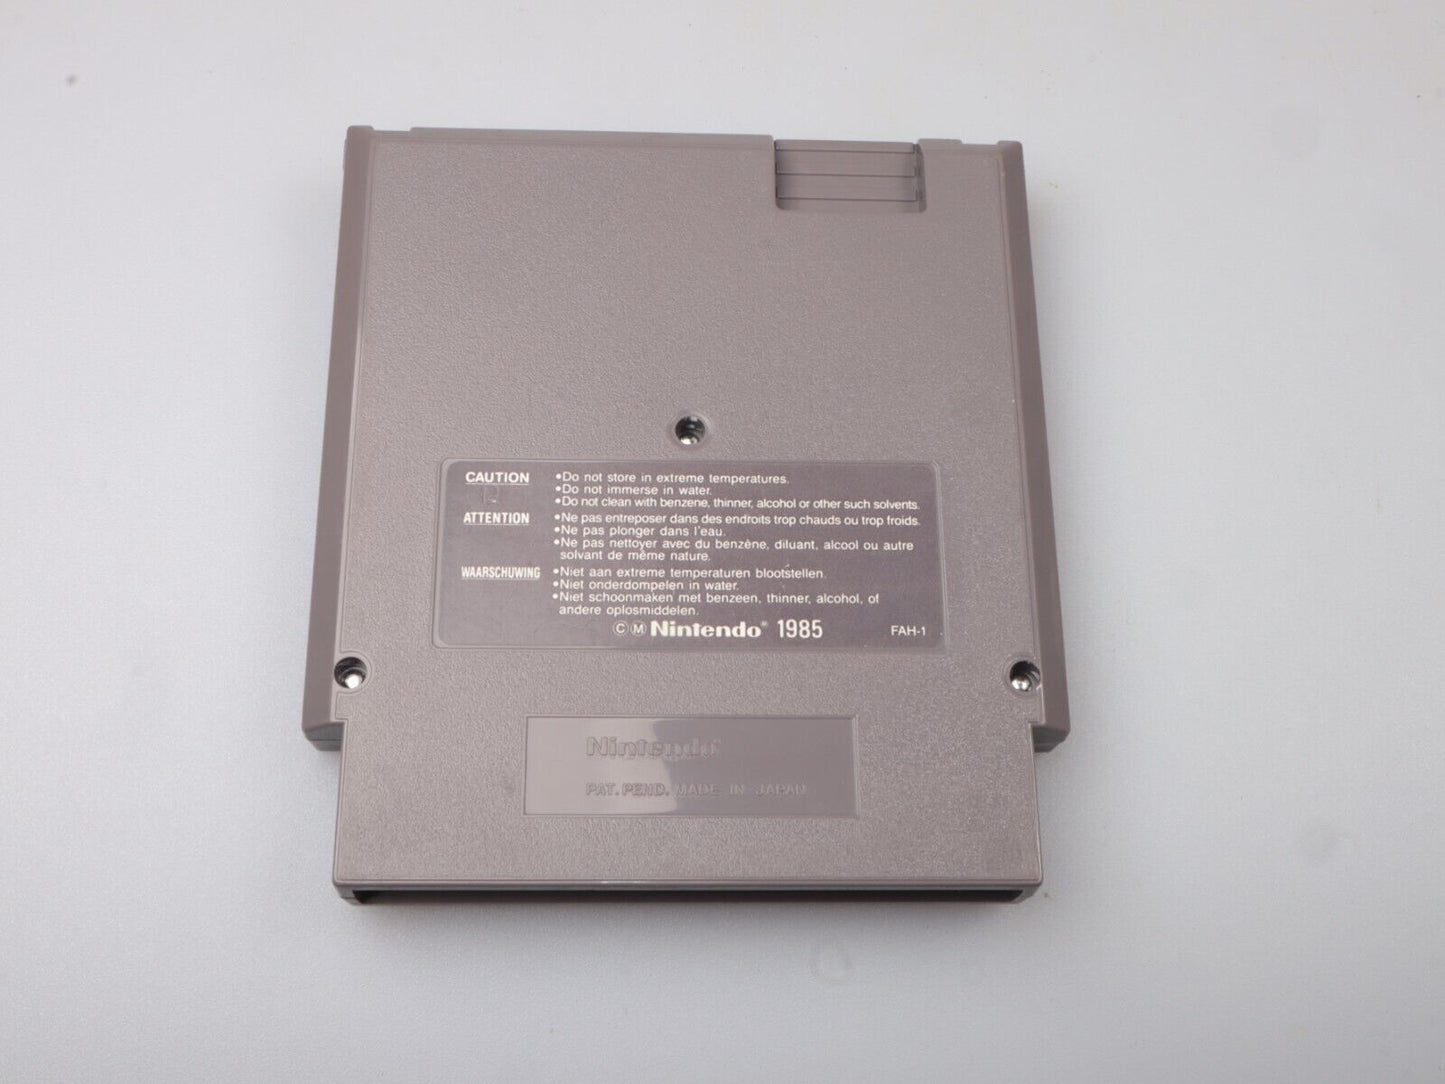 NES | Gremlins 2: de nieuwe batch | FAH | Nintendo NES-cartridge 